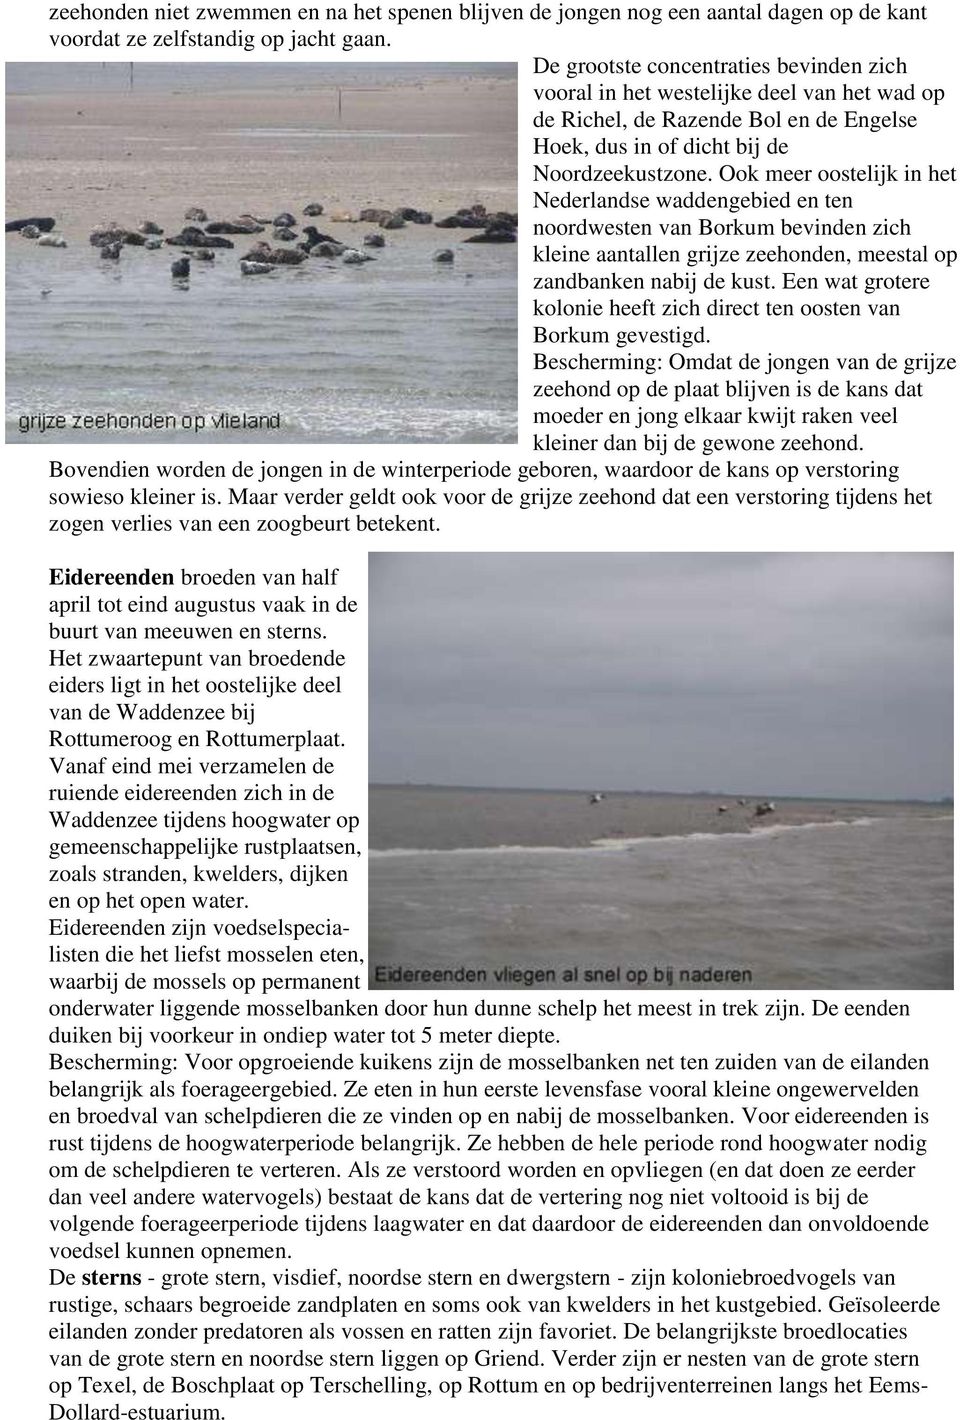 Ook meer oostelijk in het Nederlandse waddengebied en ten noordwesten van Borkum bevinden zich kleine aantallen grijze zeehonden, meestal op zandbanken nabij de kust.